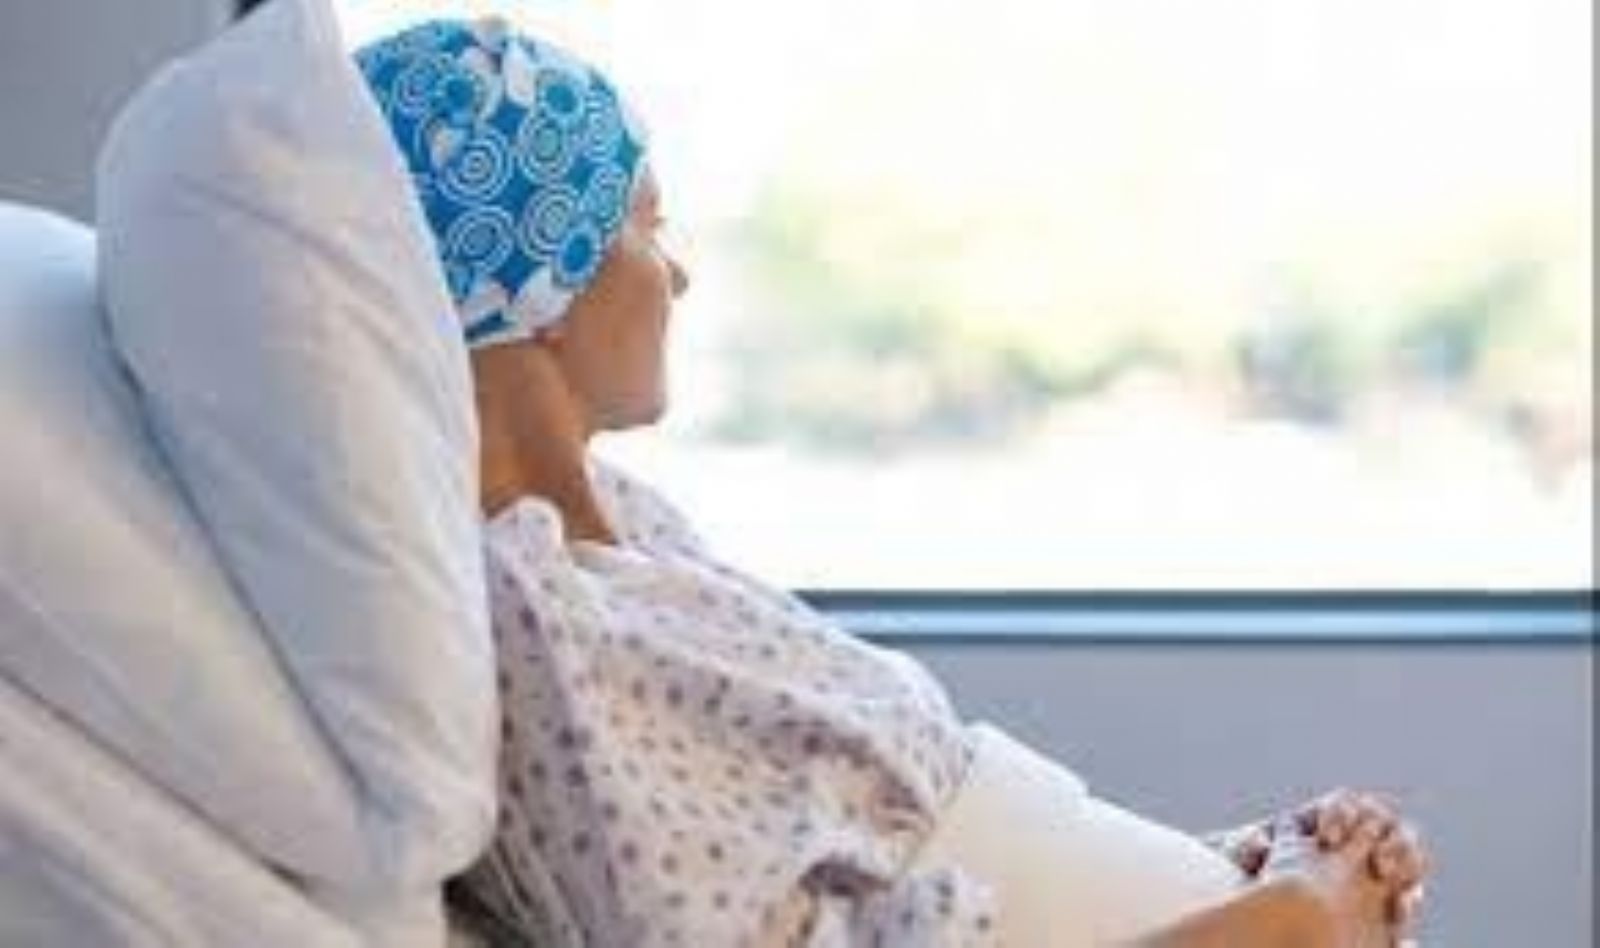 ازدياد نسبة المصابين بالسرطان دون سنّ الخمسين بـ80%